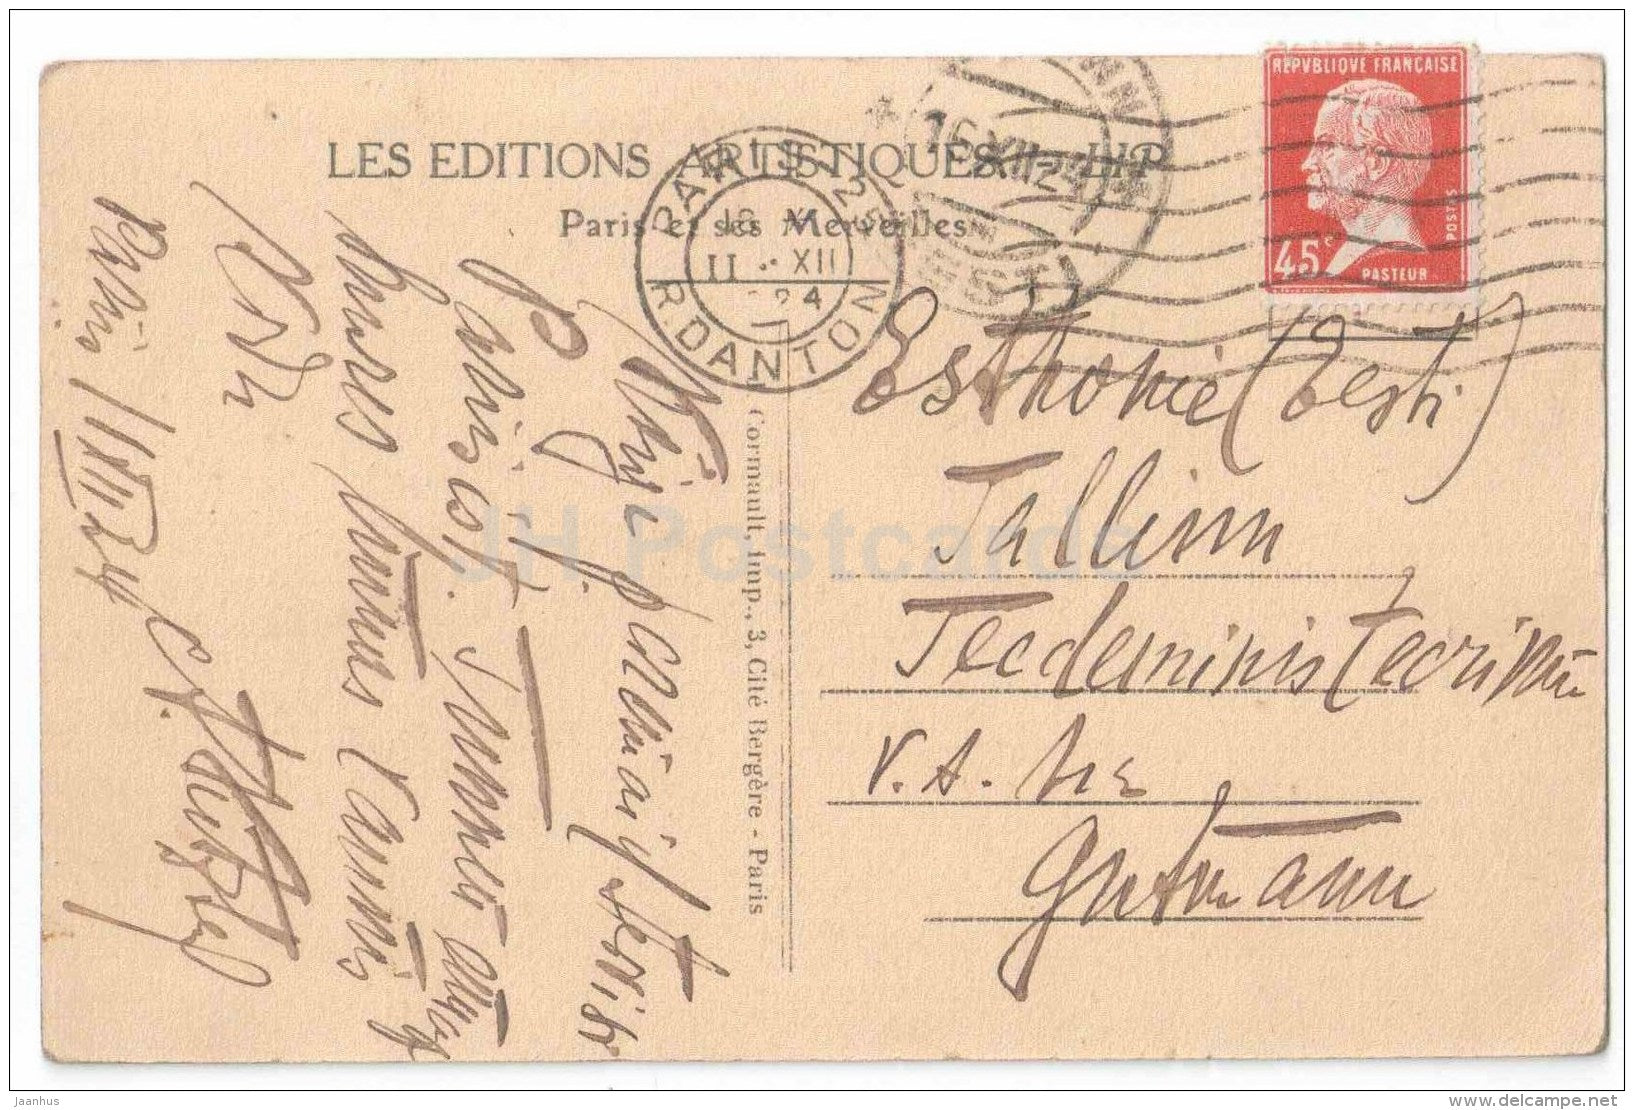 La Tour Eiffel et l´Ecole Militaire - Paris - France - sent from France Paris to to Estonia Tallinn 1924 - JH Postcards